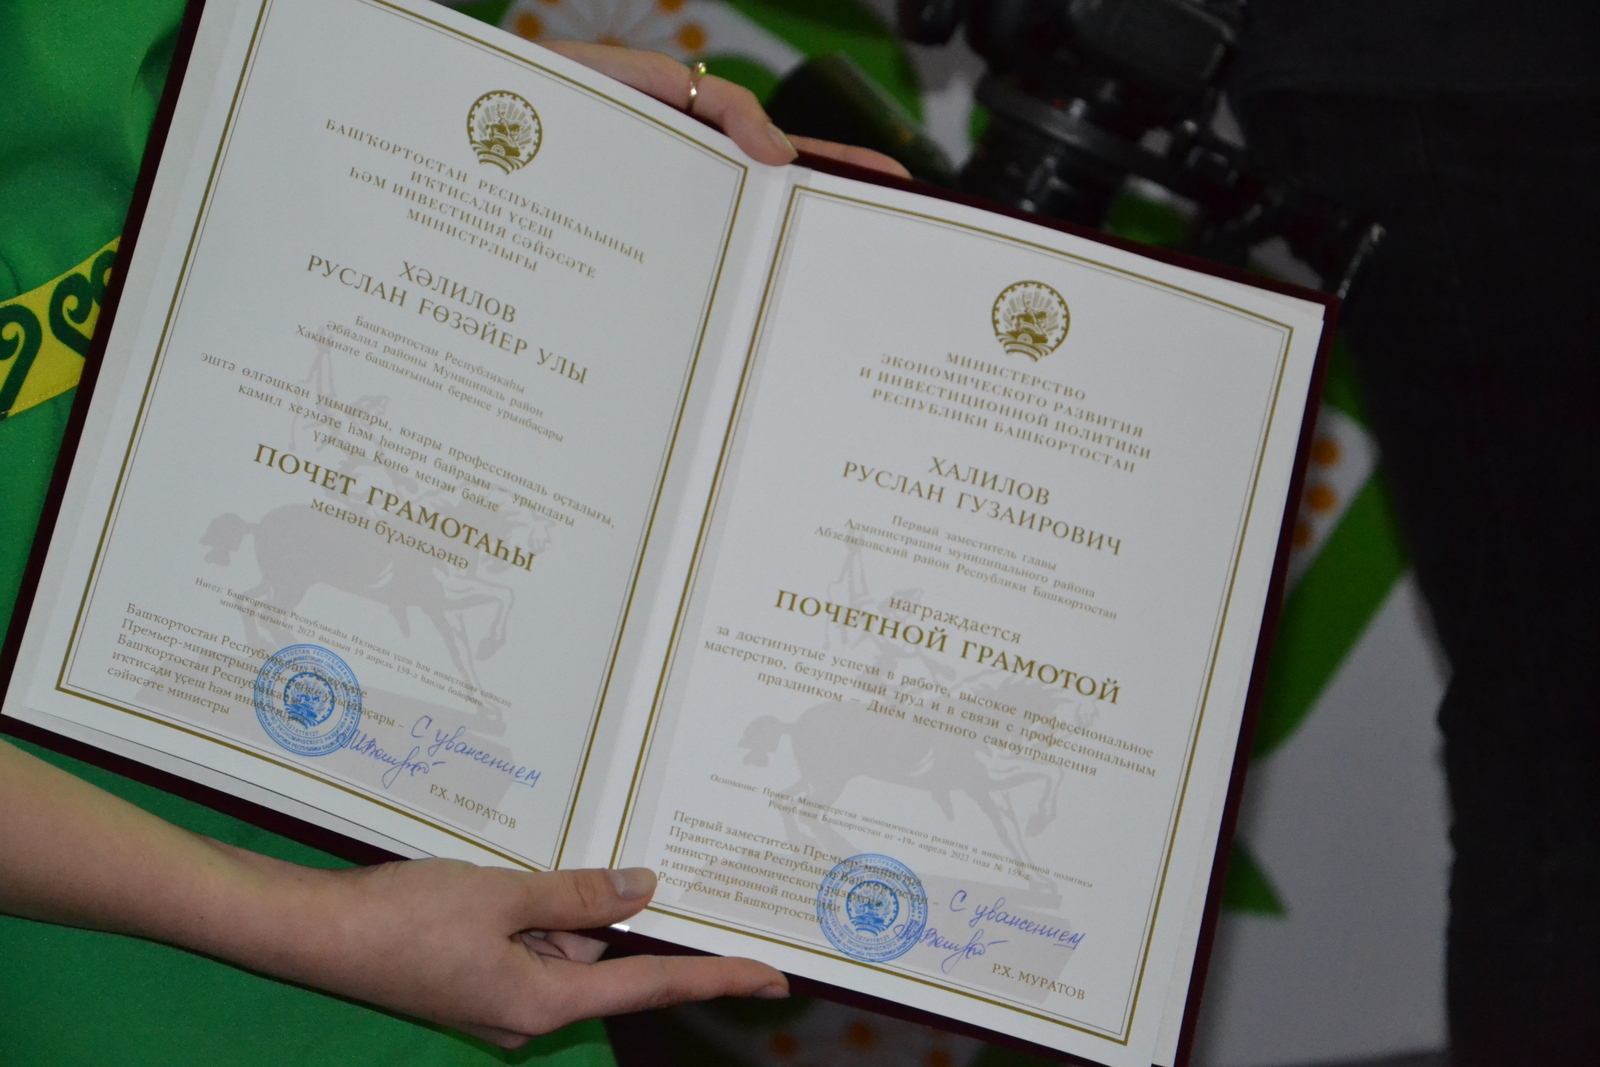 Вице-премьер Башкирии Рустам Муратов наградил бизнес-шерифов республики